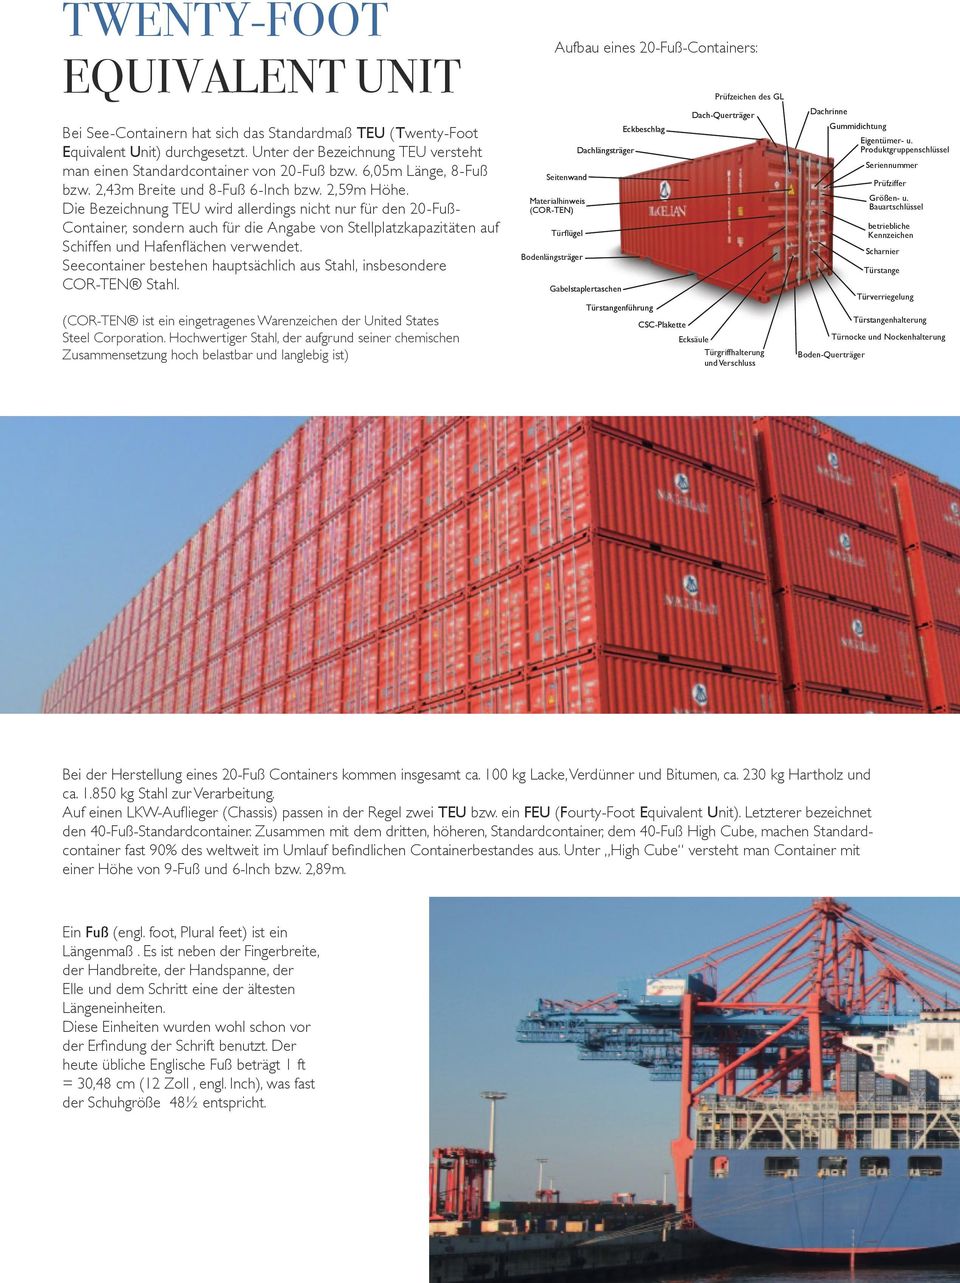 Die Bezeichnung TEU wird allerdings nicht nur für den 20-FußContainer, sondern auch für die Angabe von Stellplatzkapazitäten auf Schiffen und Hafenflächen verwendet.